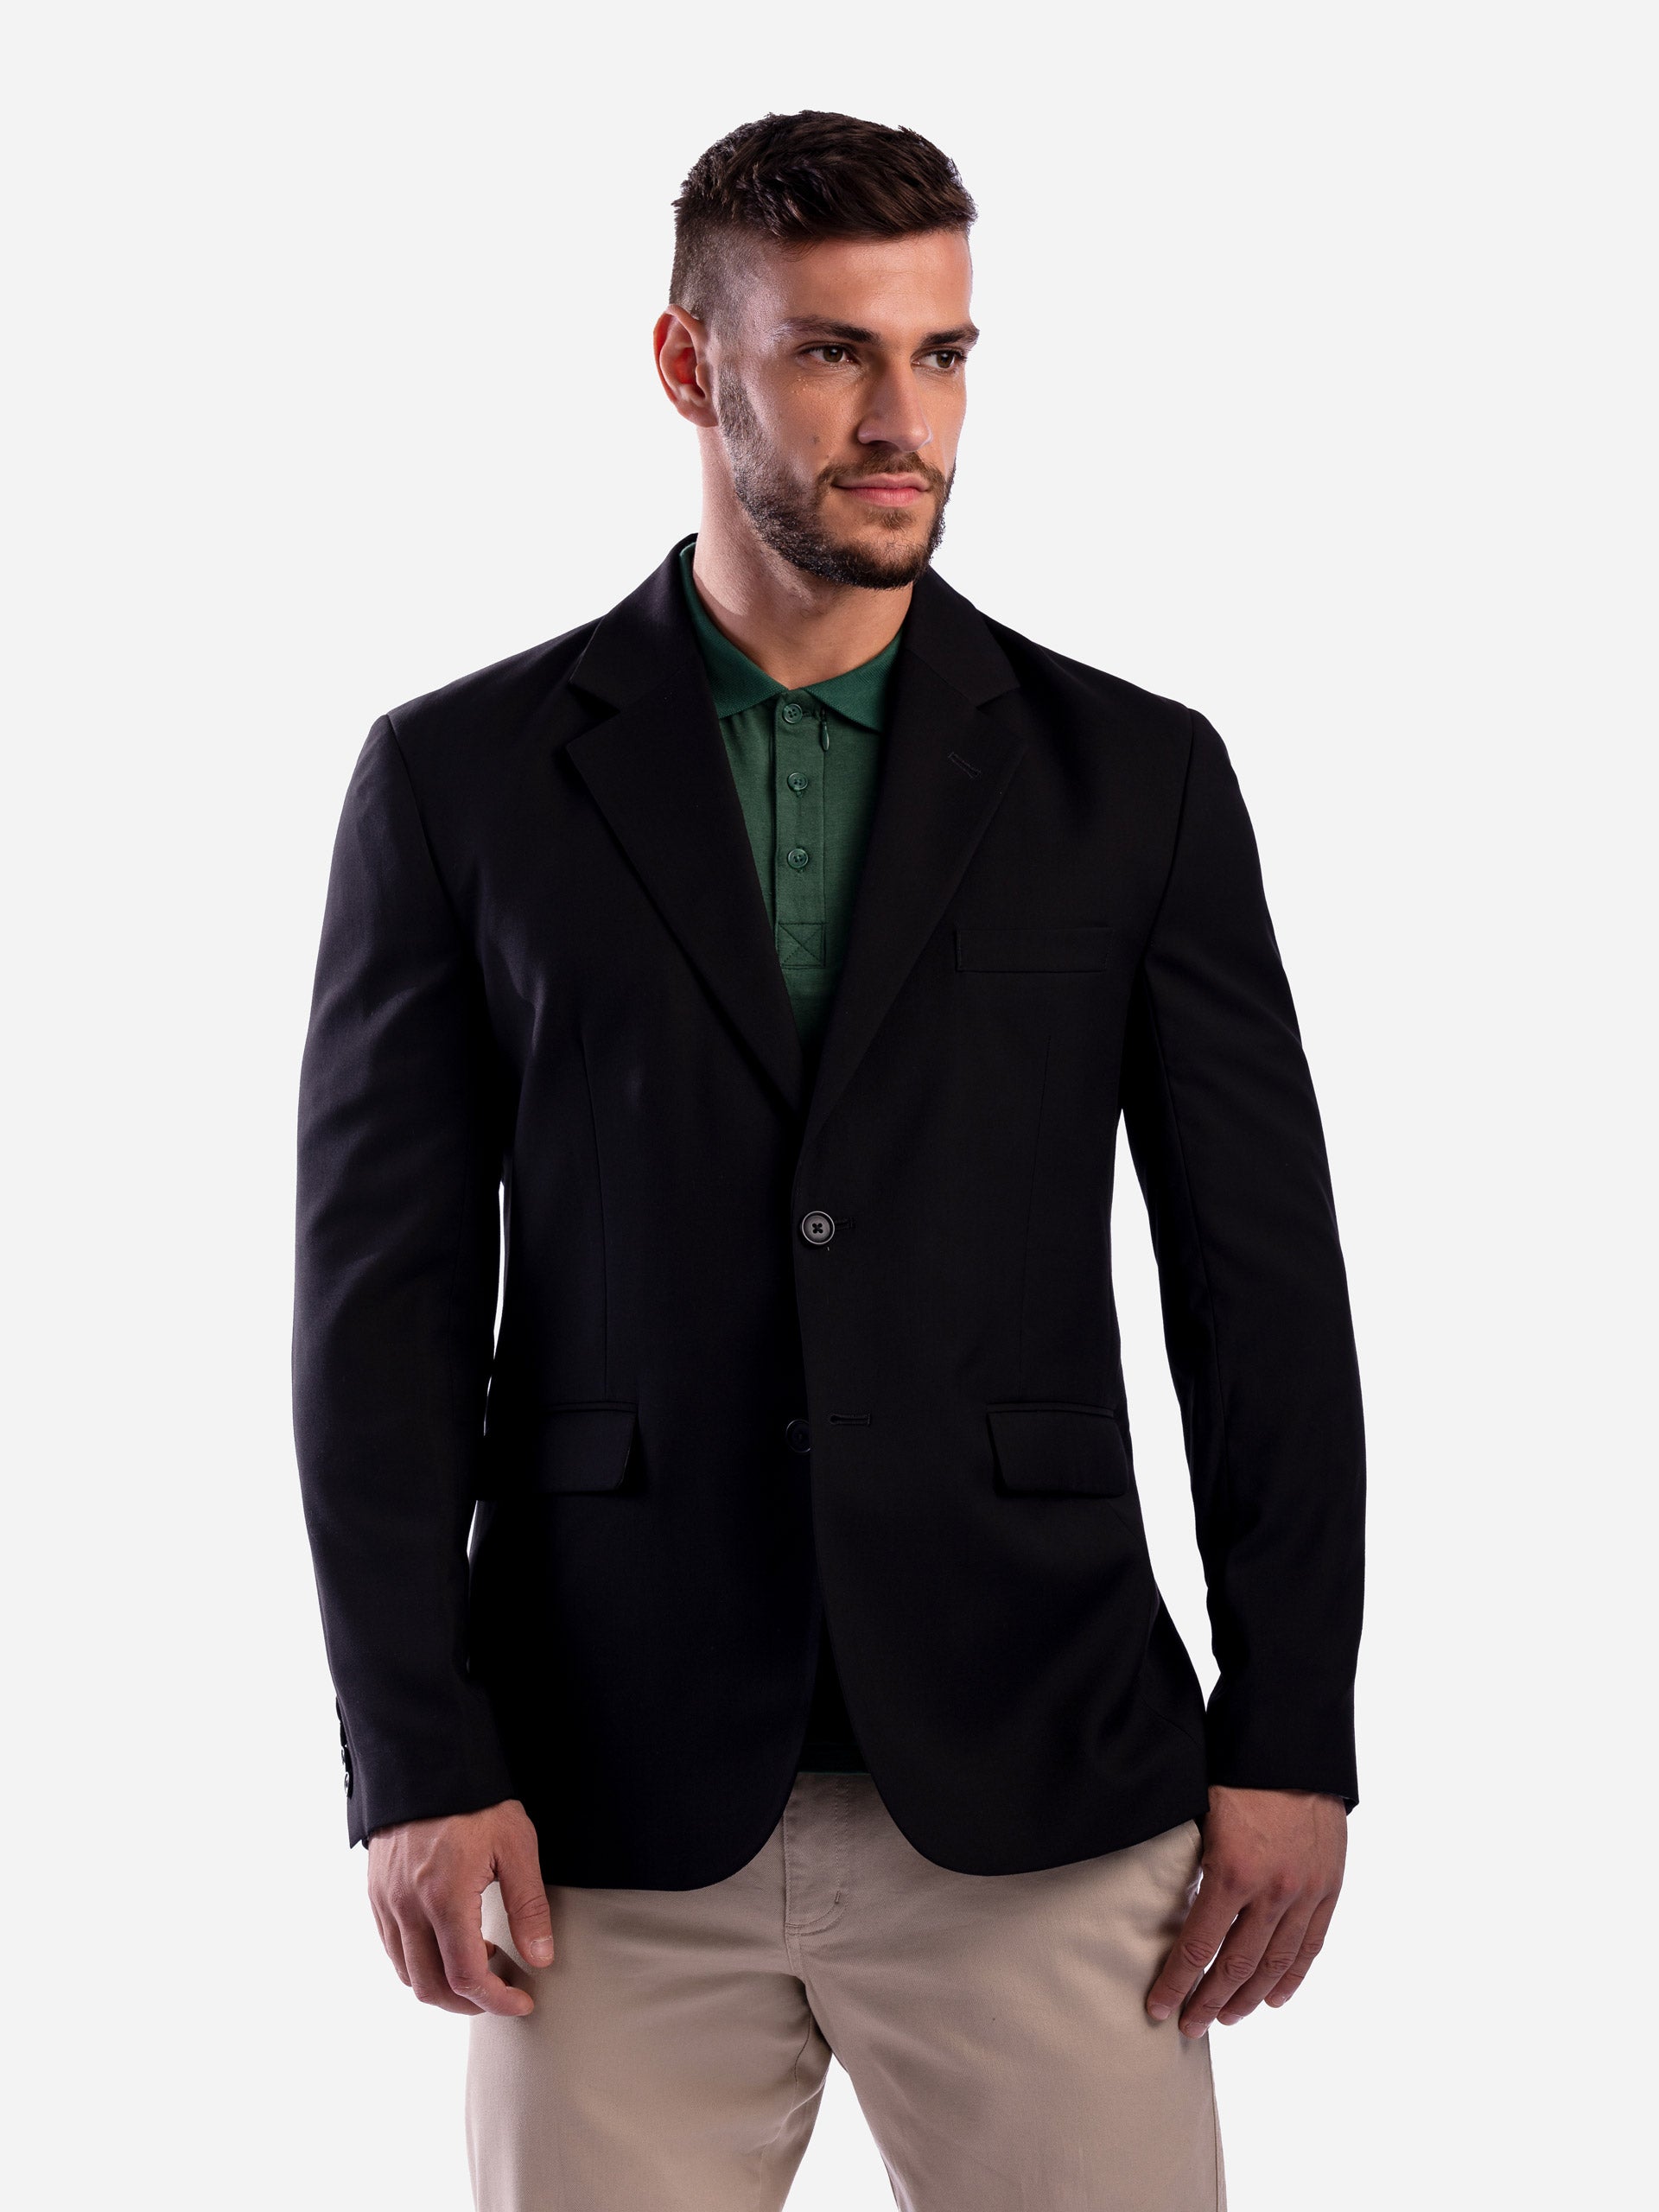 T5 Men's Sport coat with Hidden Pockets